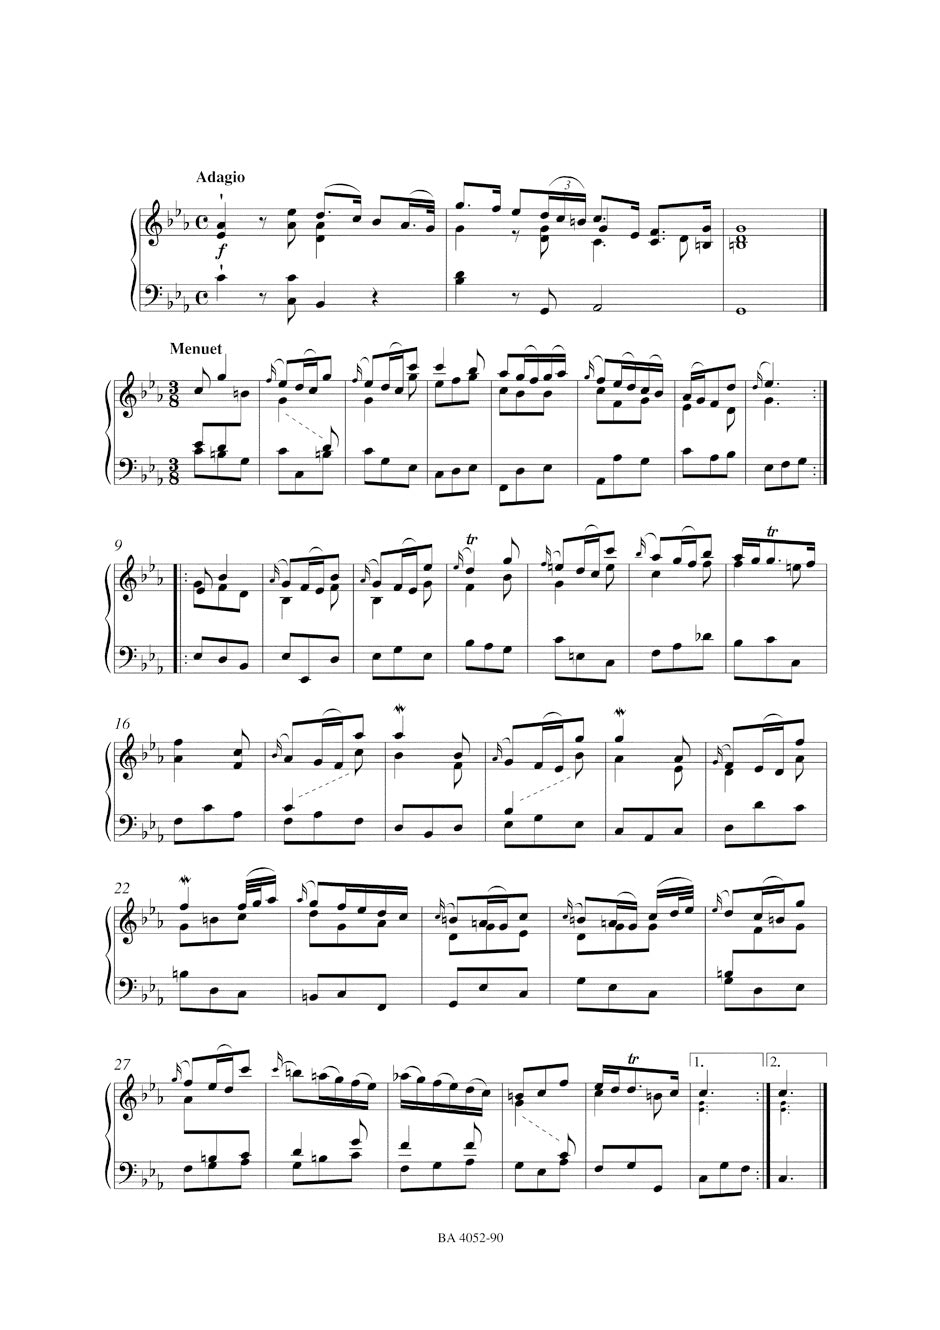 Handel Tamerlano HWV 18 -Dramma per musica in thre acts- Vocal Score